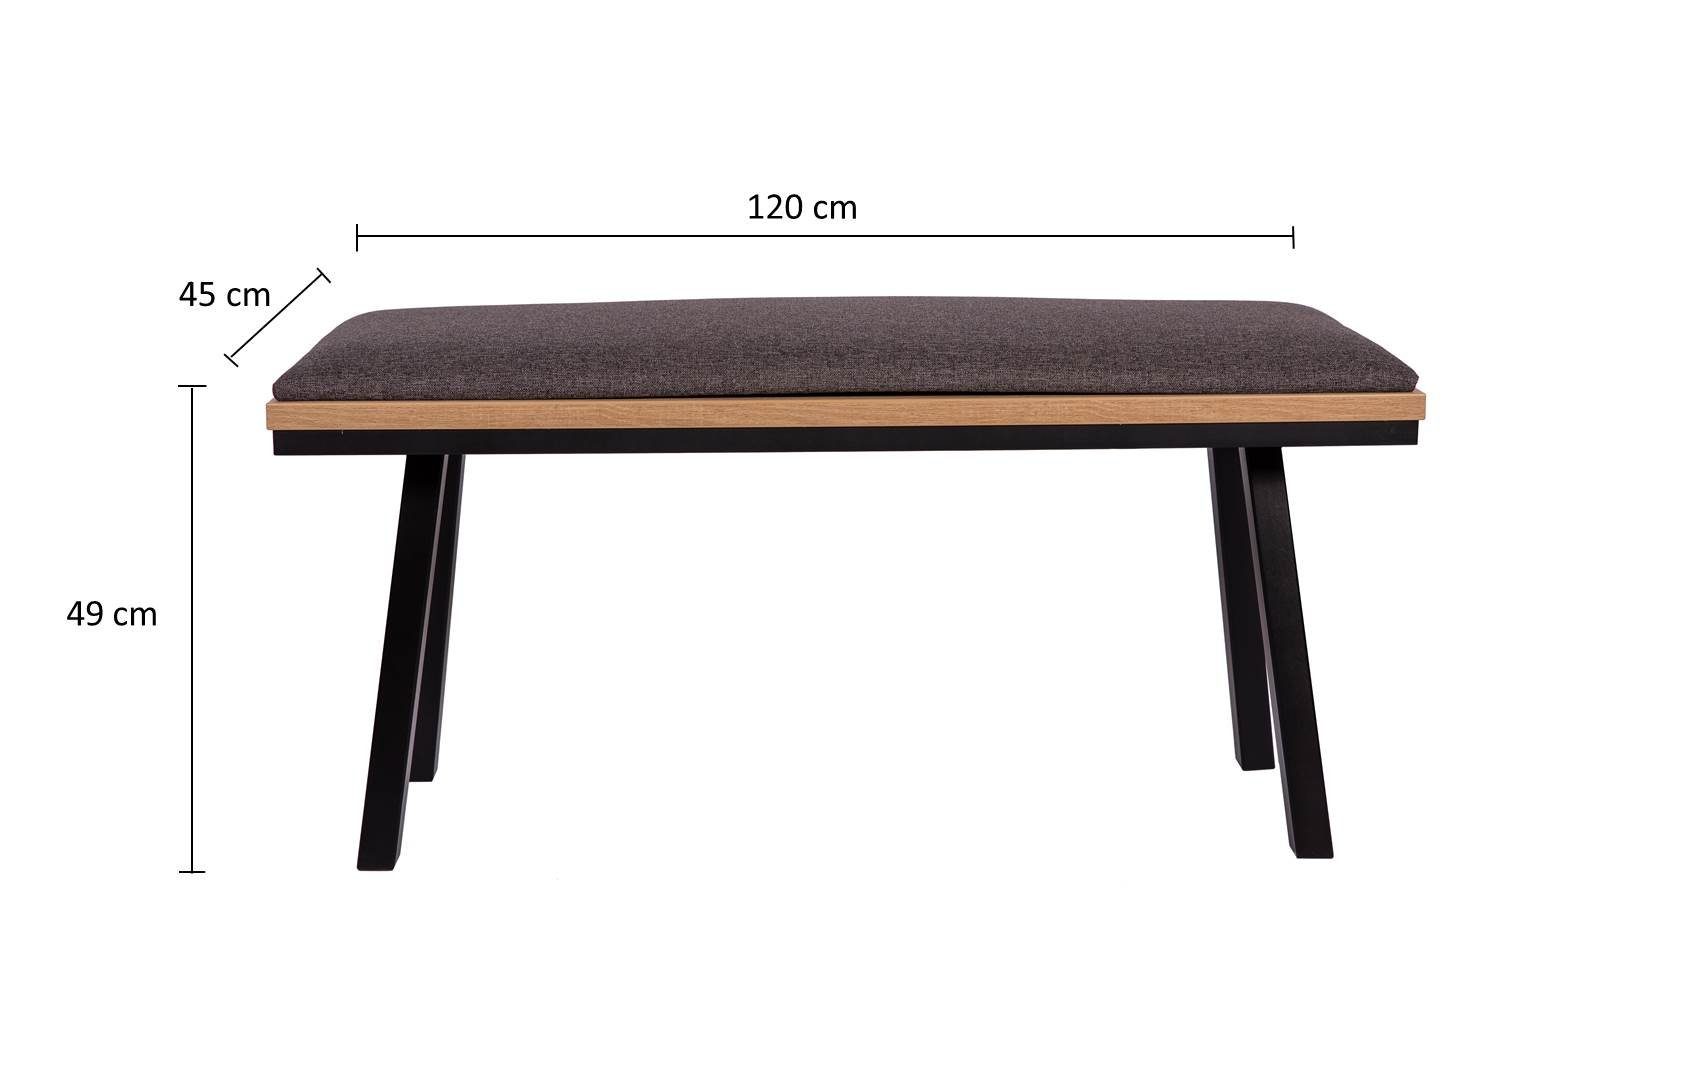 Holz, Set Elegante' Füße 120cm, 3-tlg. Tisch kundler Massiv home Essgruppe 'Die Sitzbank